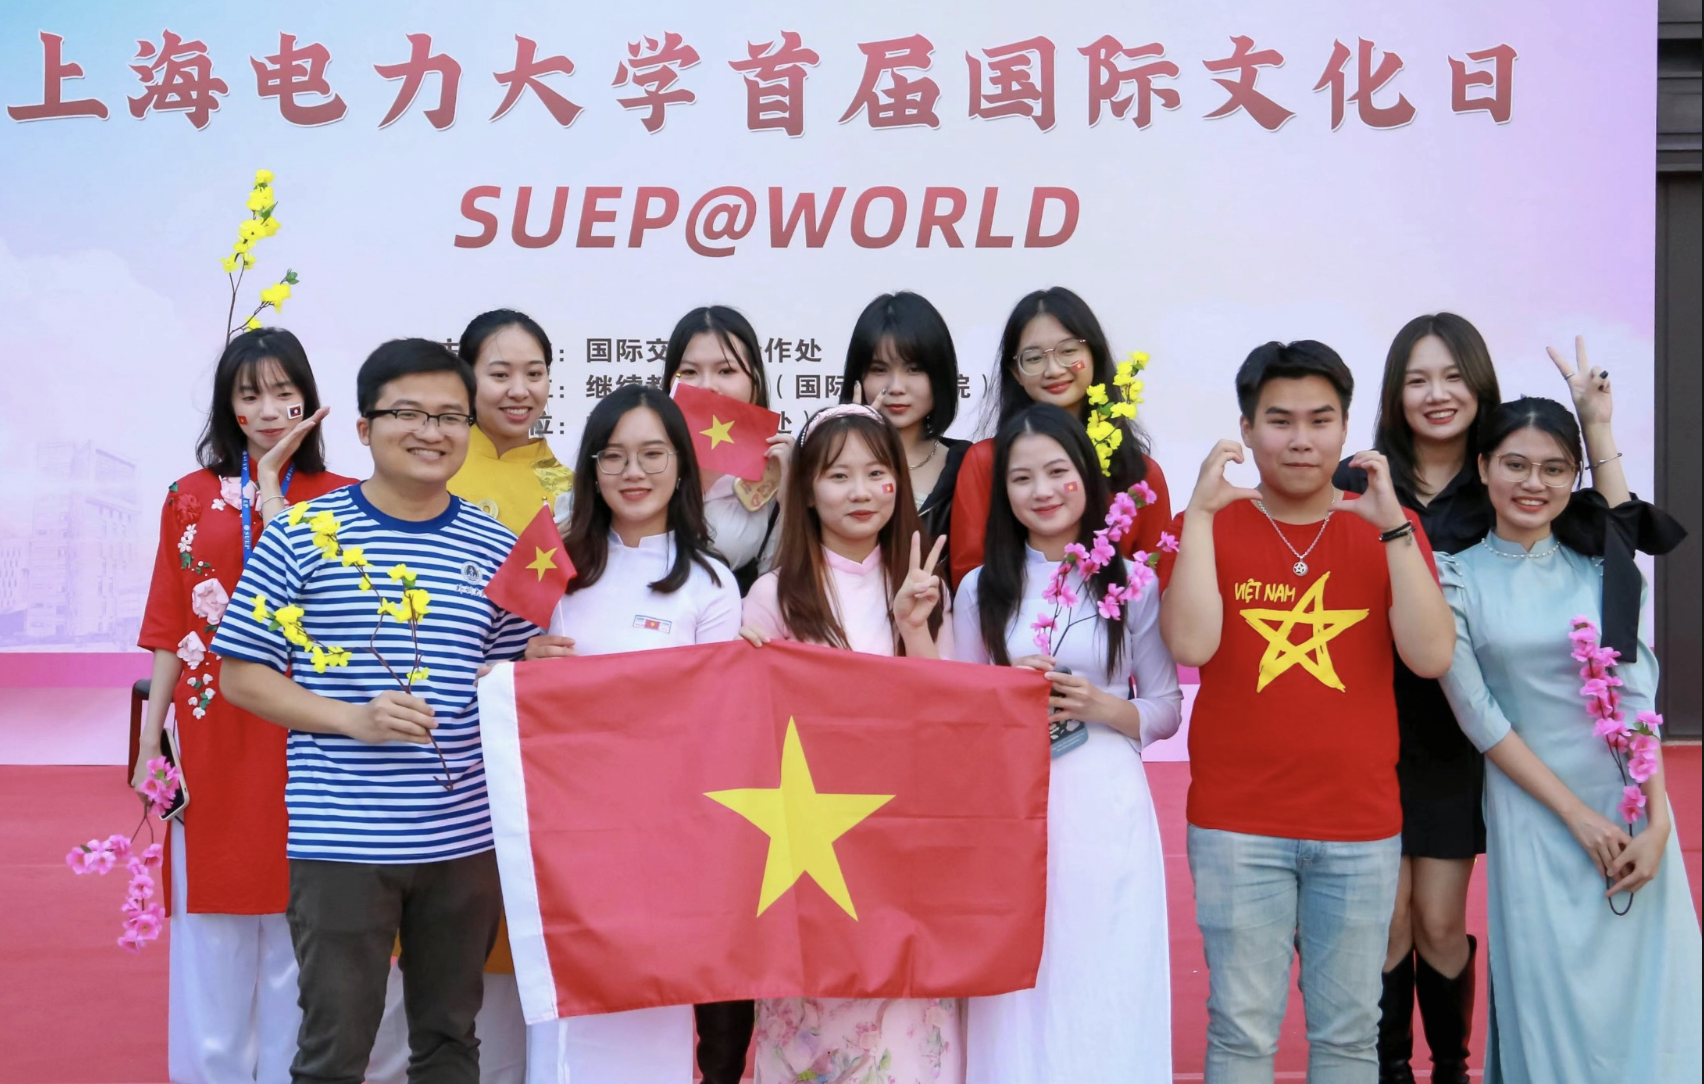 Nữ sinh Việt tự học tiếng Trung trong 2 tháng, trúng học bổng toàn phần - Ảnh 4.